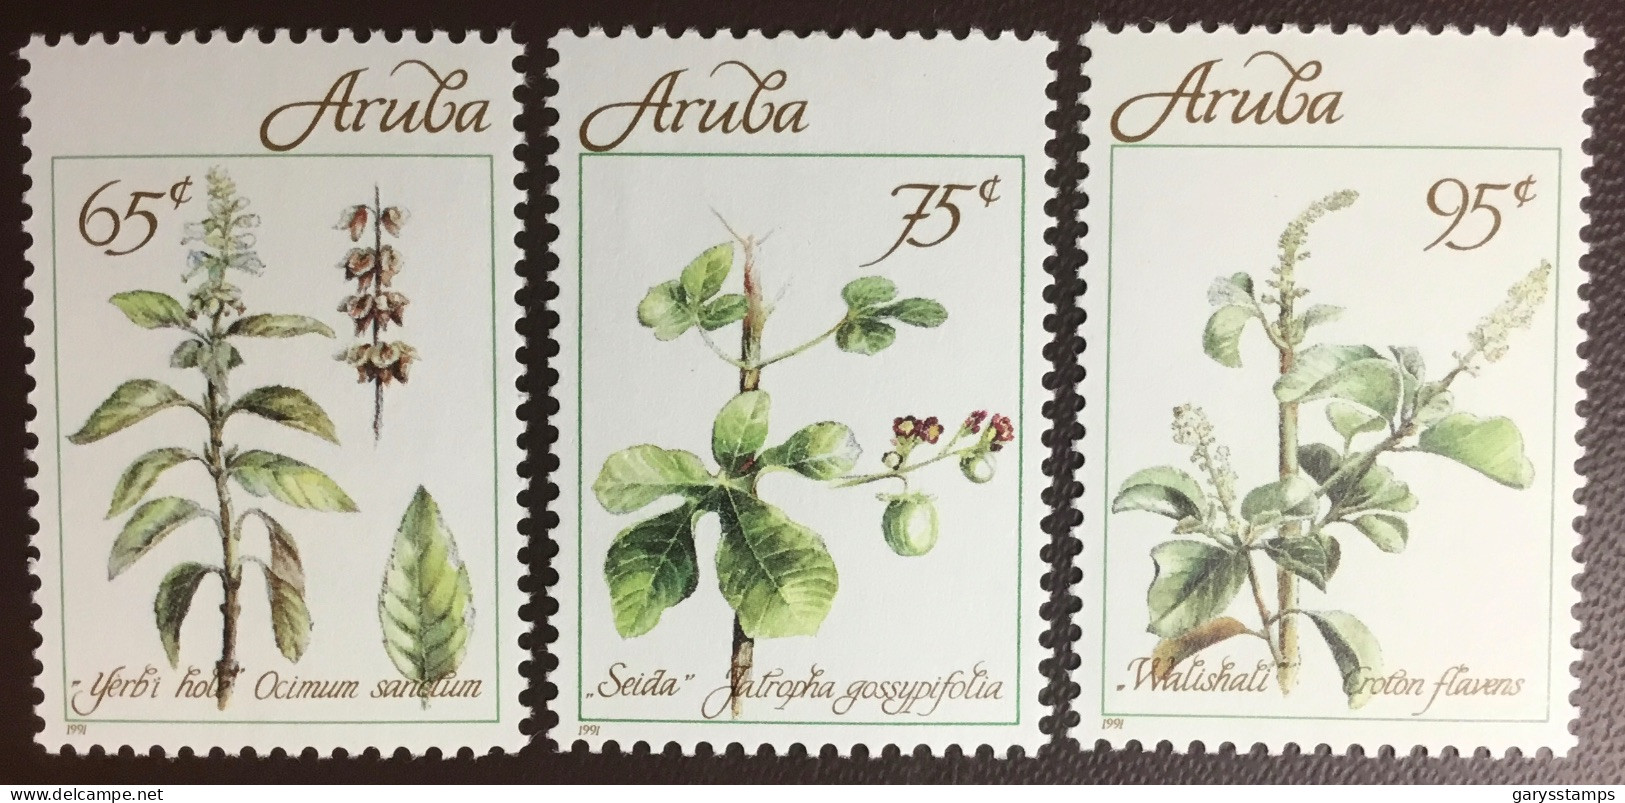 Aruba 1991 Medicinal Plants MNH - Plantas Medicinales